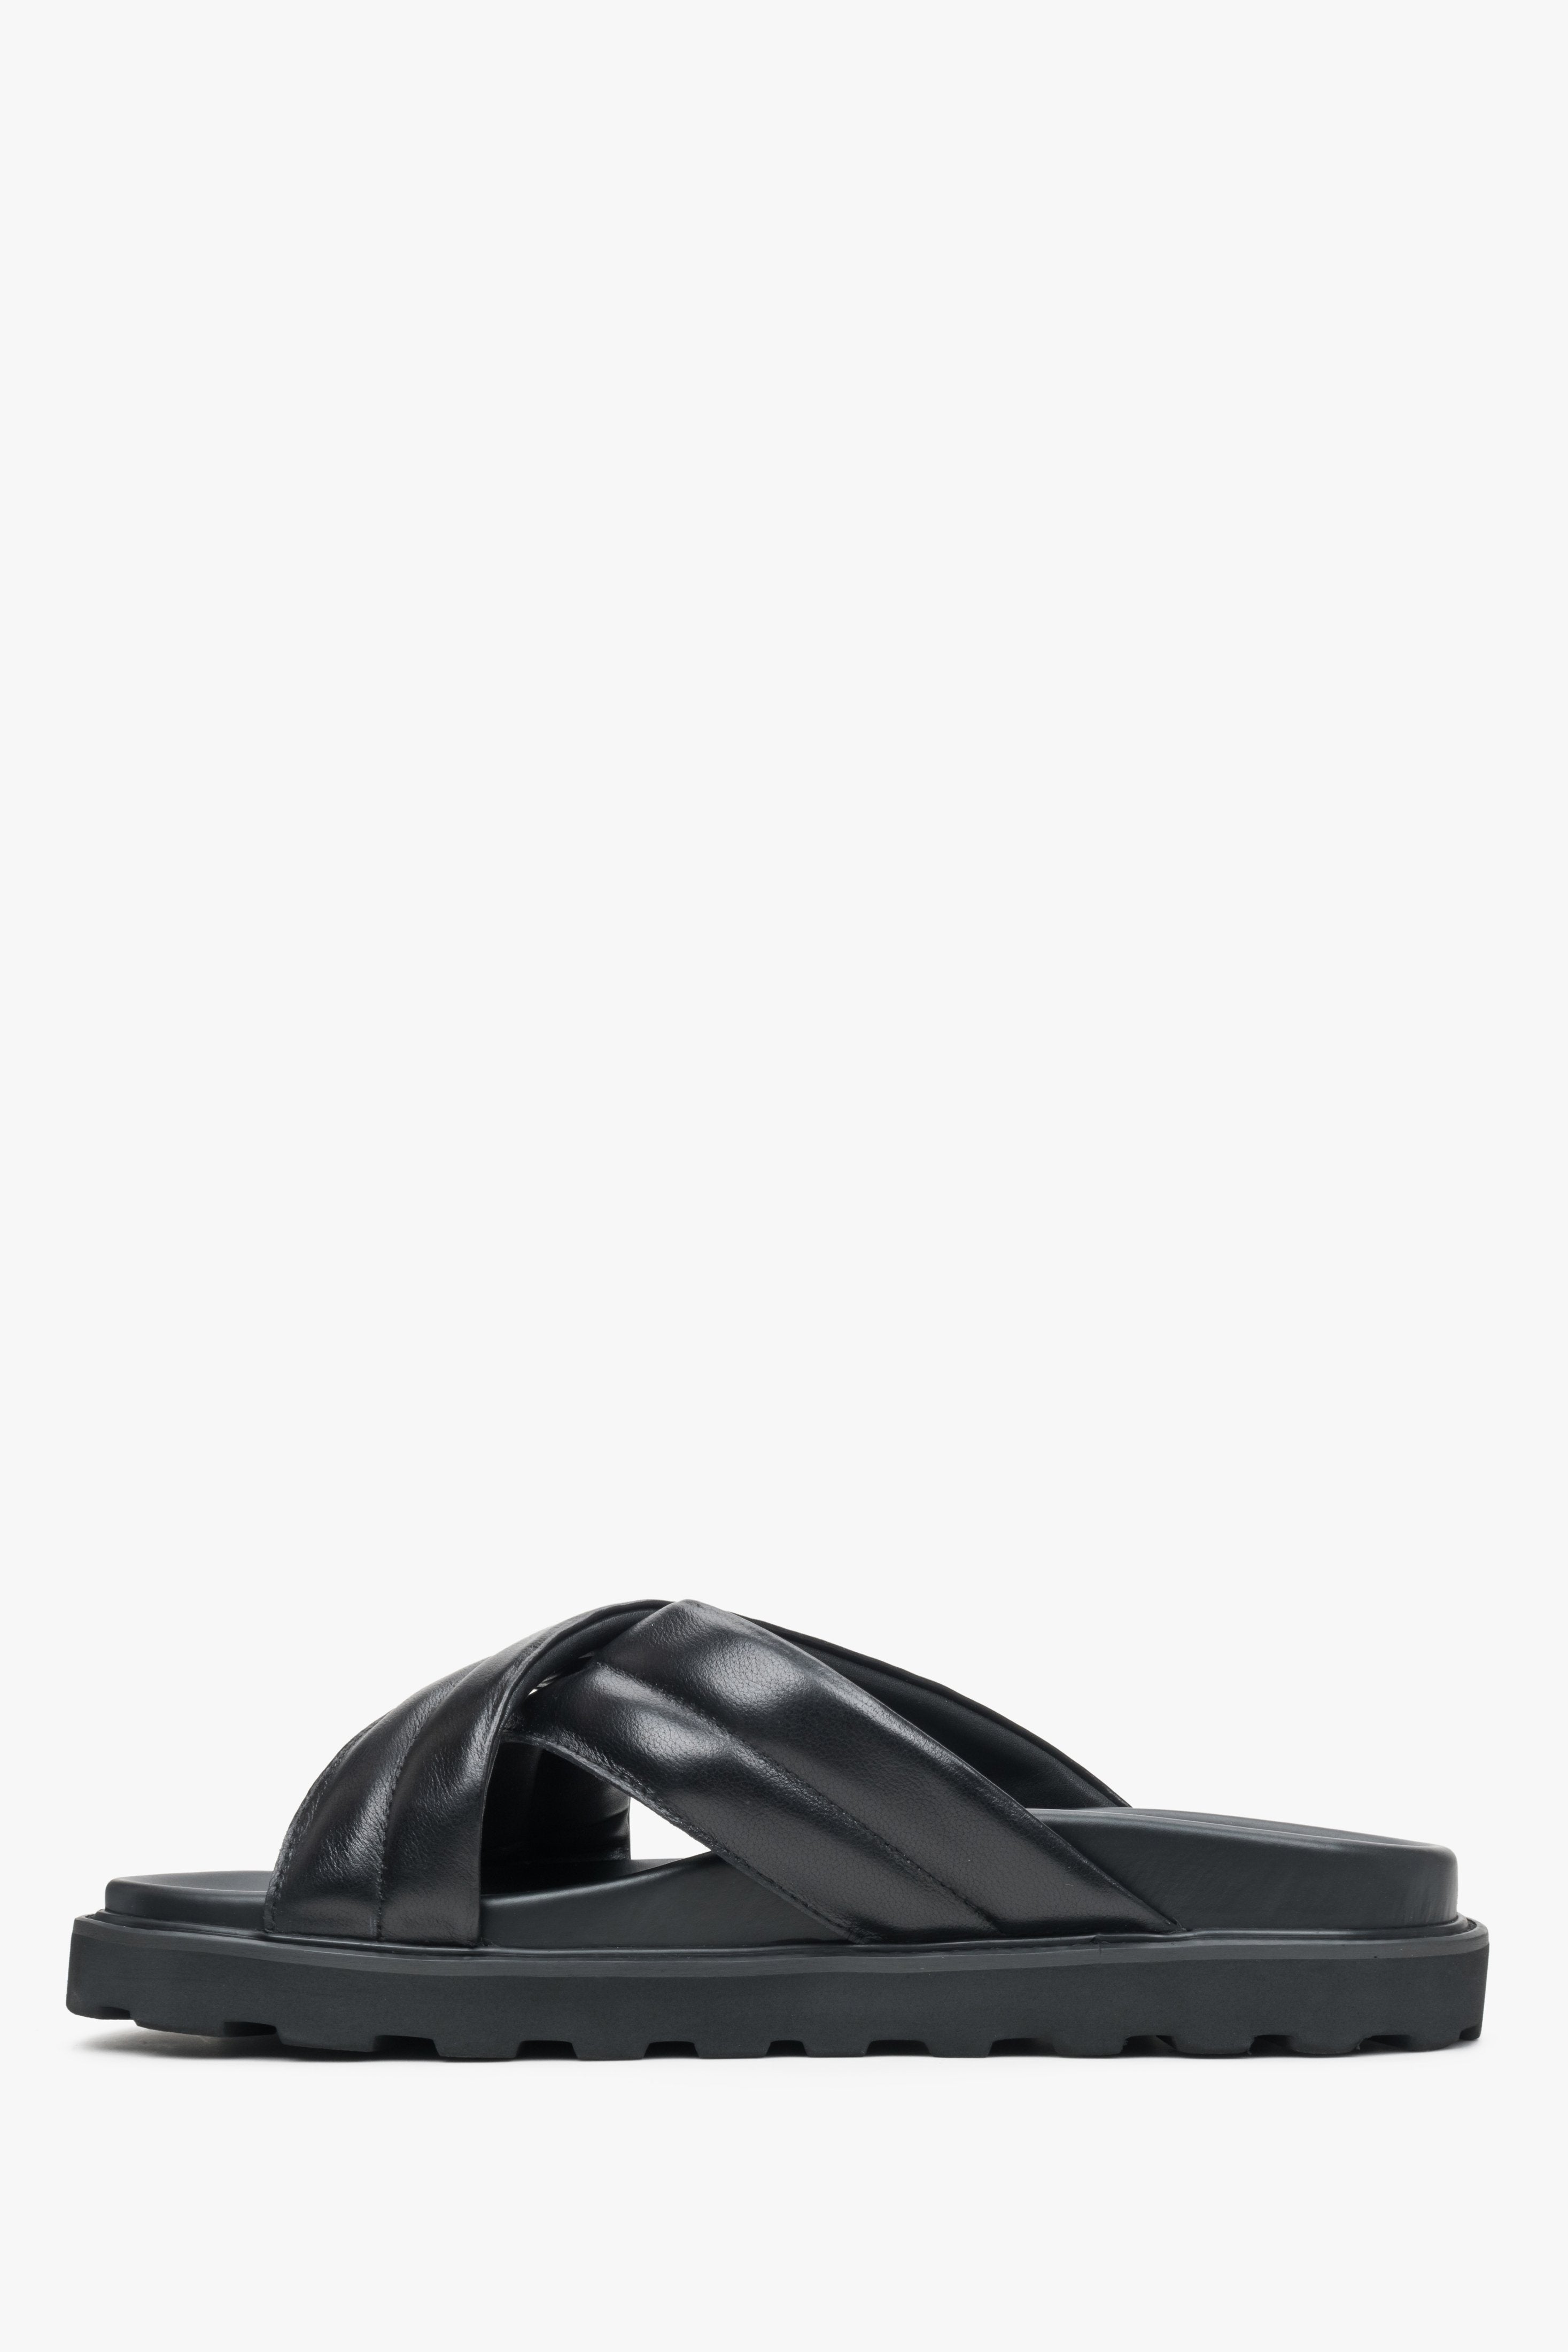 Skórzane, czarne klapki męskie Estro na miękkiej podeszwie z krzyżowanymi paskami Estro - profil buta.